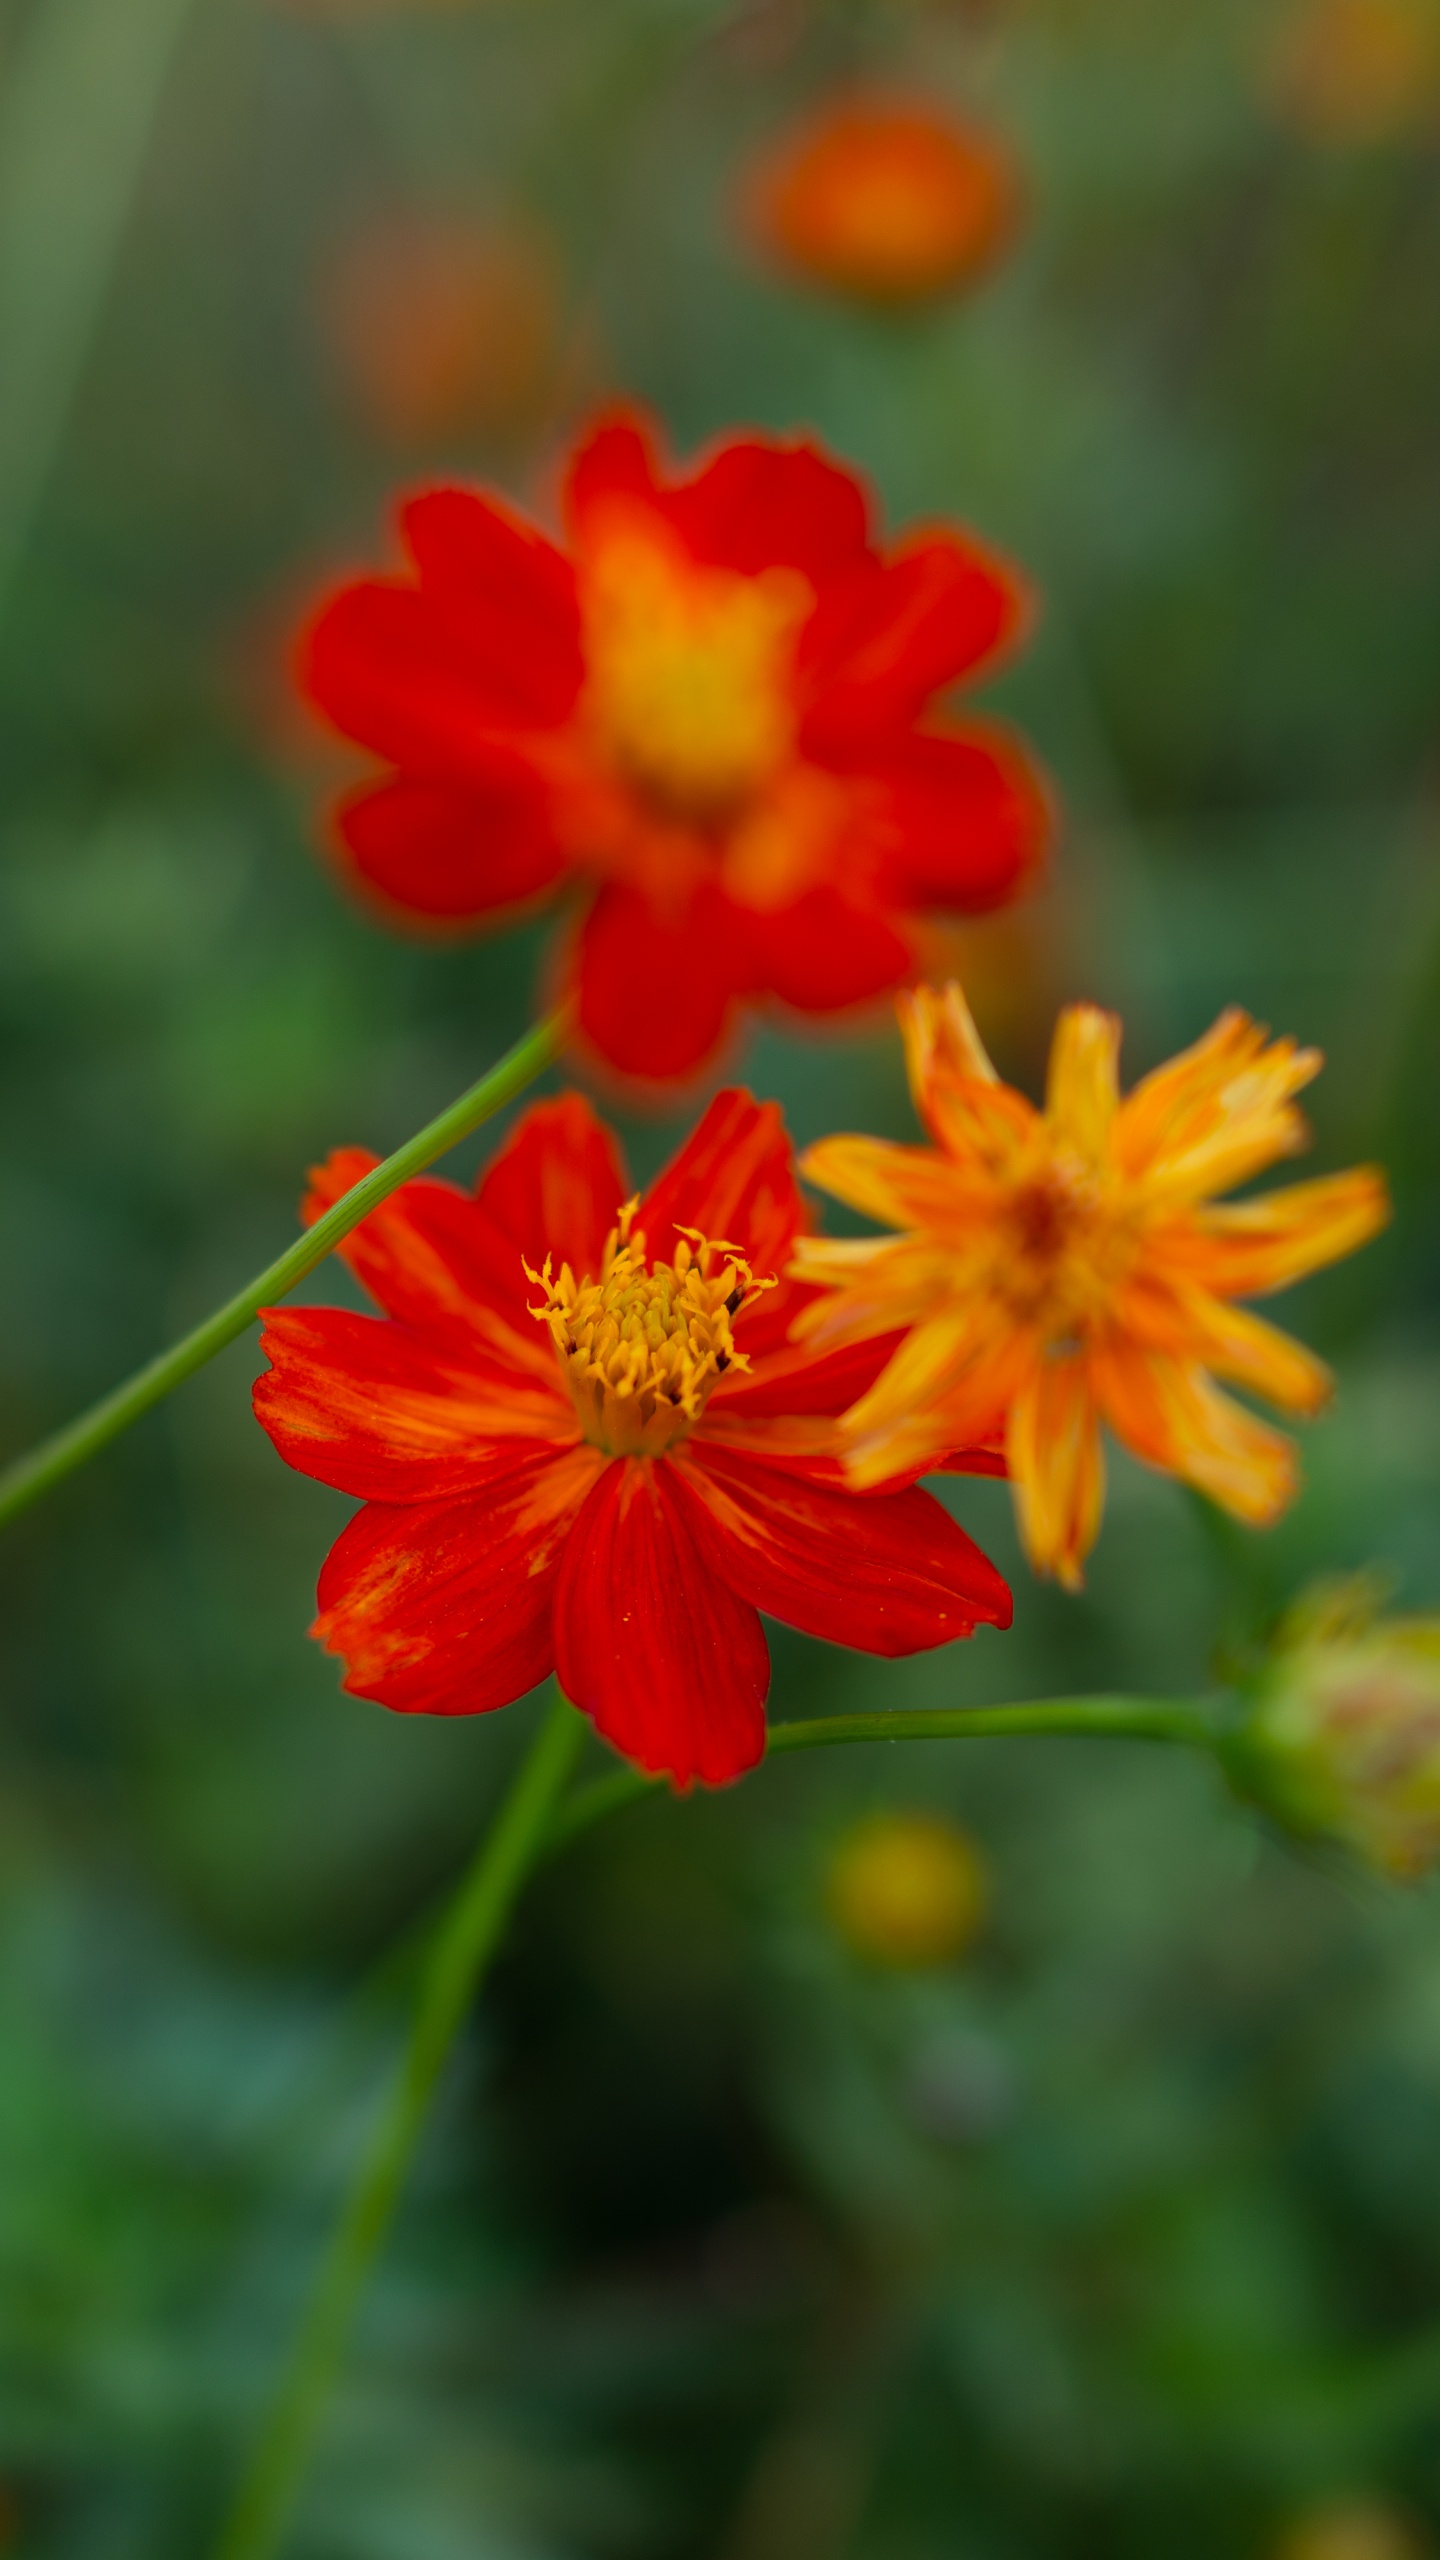 Red Flower in Tilt Shift Lens. Wallpaper in 1440x2560 Resolution